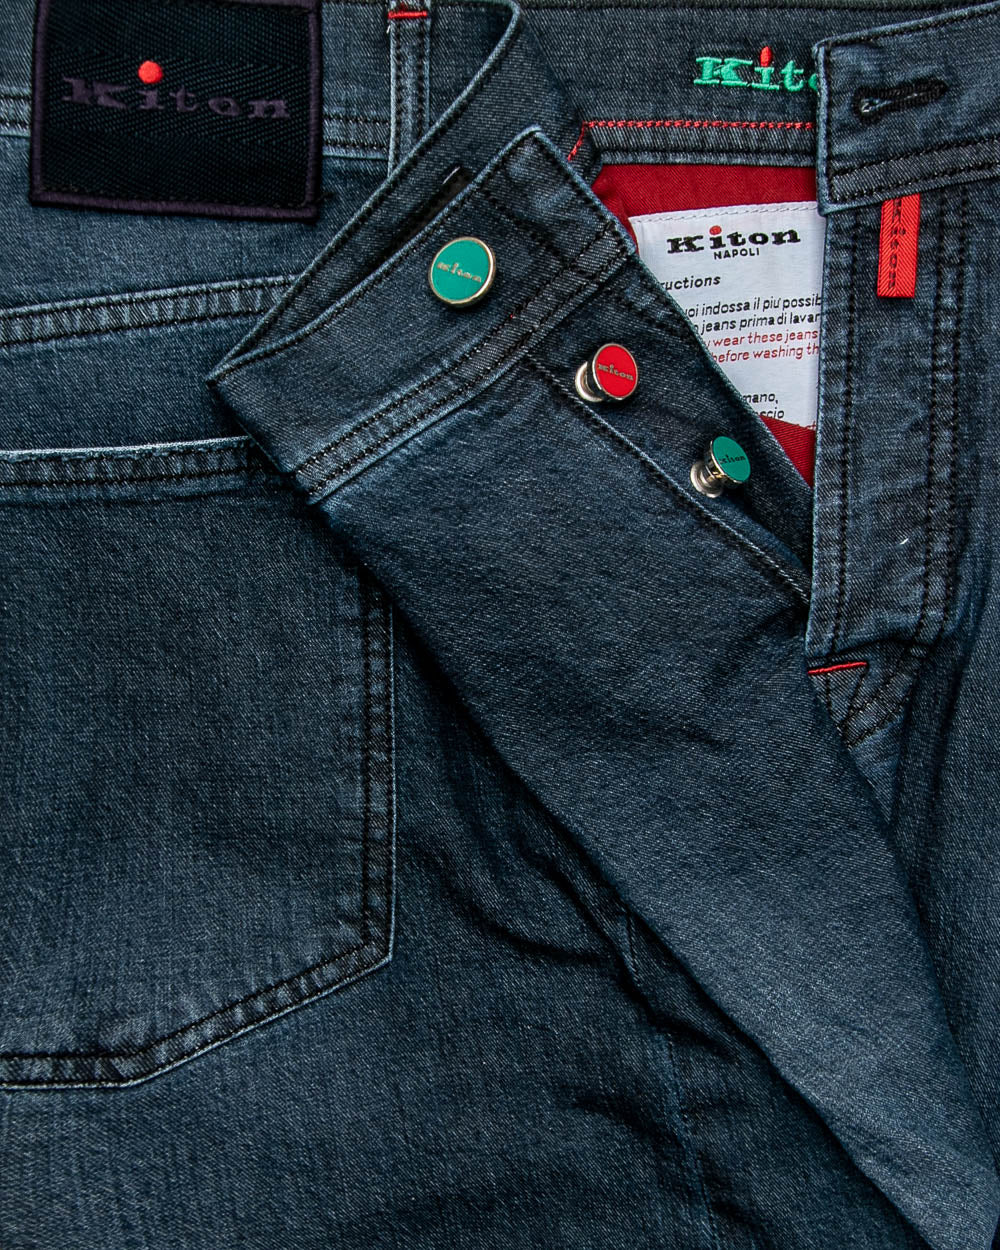 Dark Wash 5 Pocket Jean